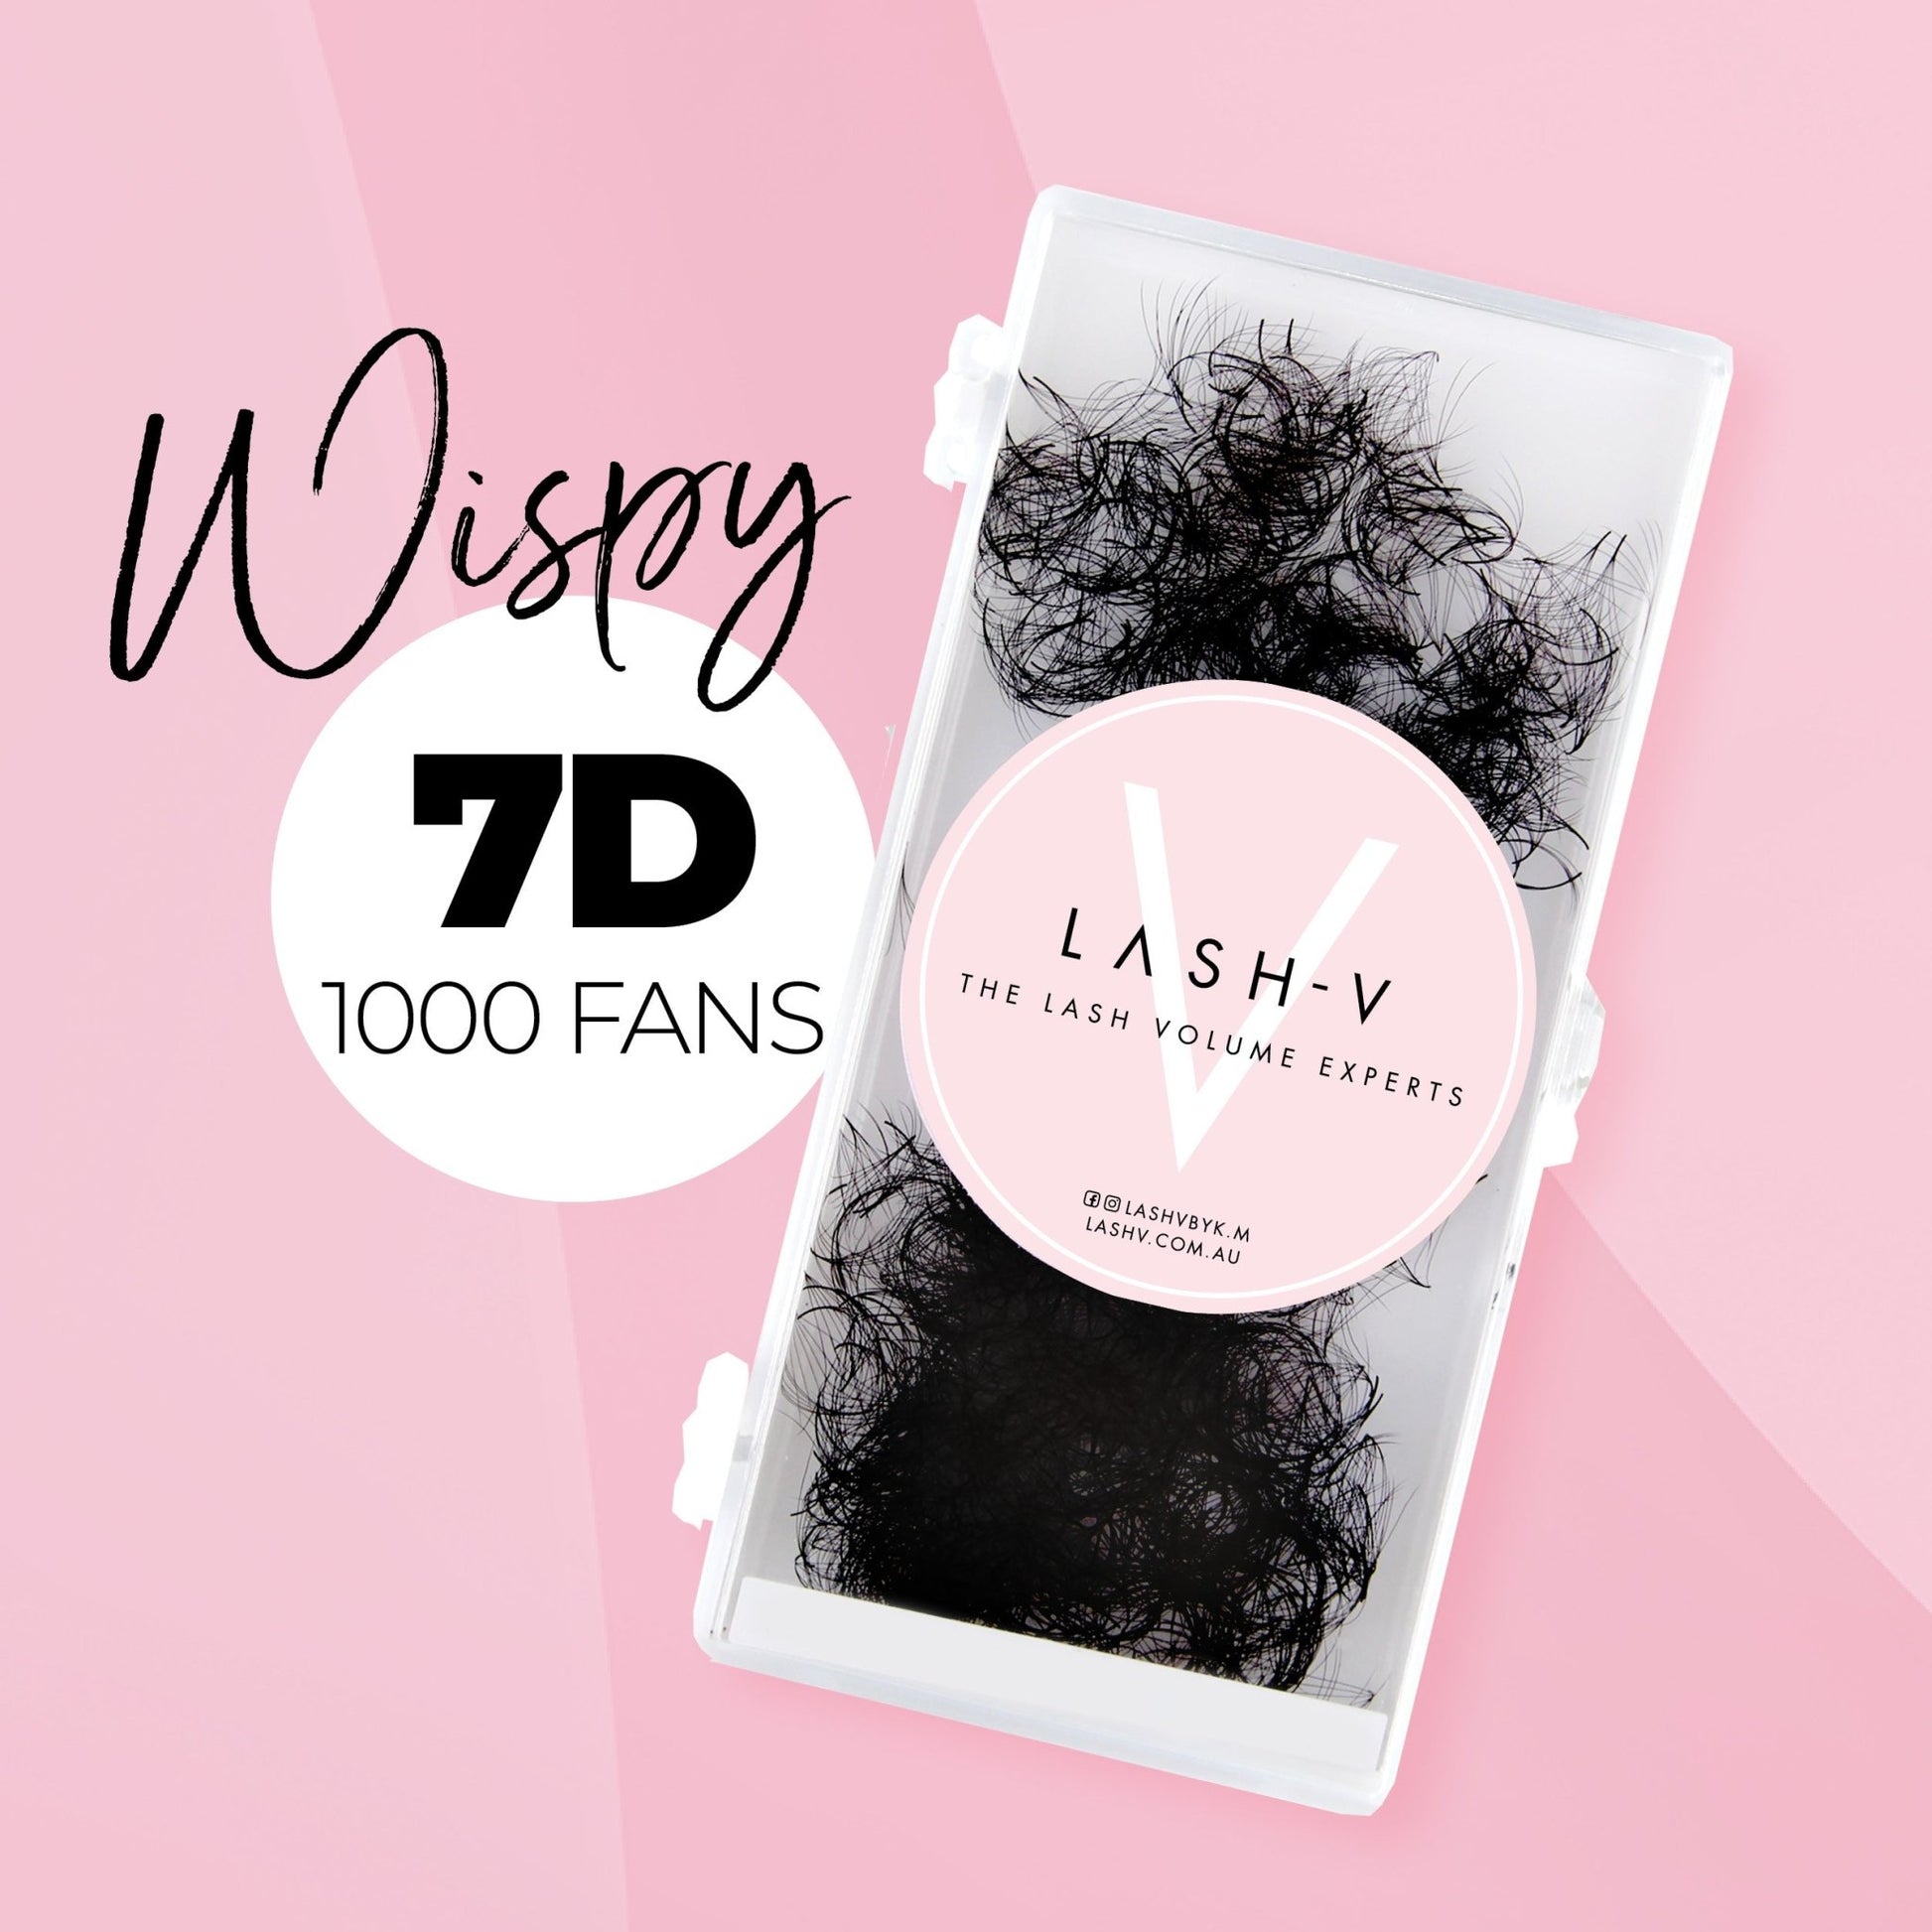 7D Promade Wispy Loose - 1000 Fans - LASH V